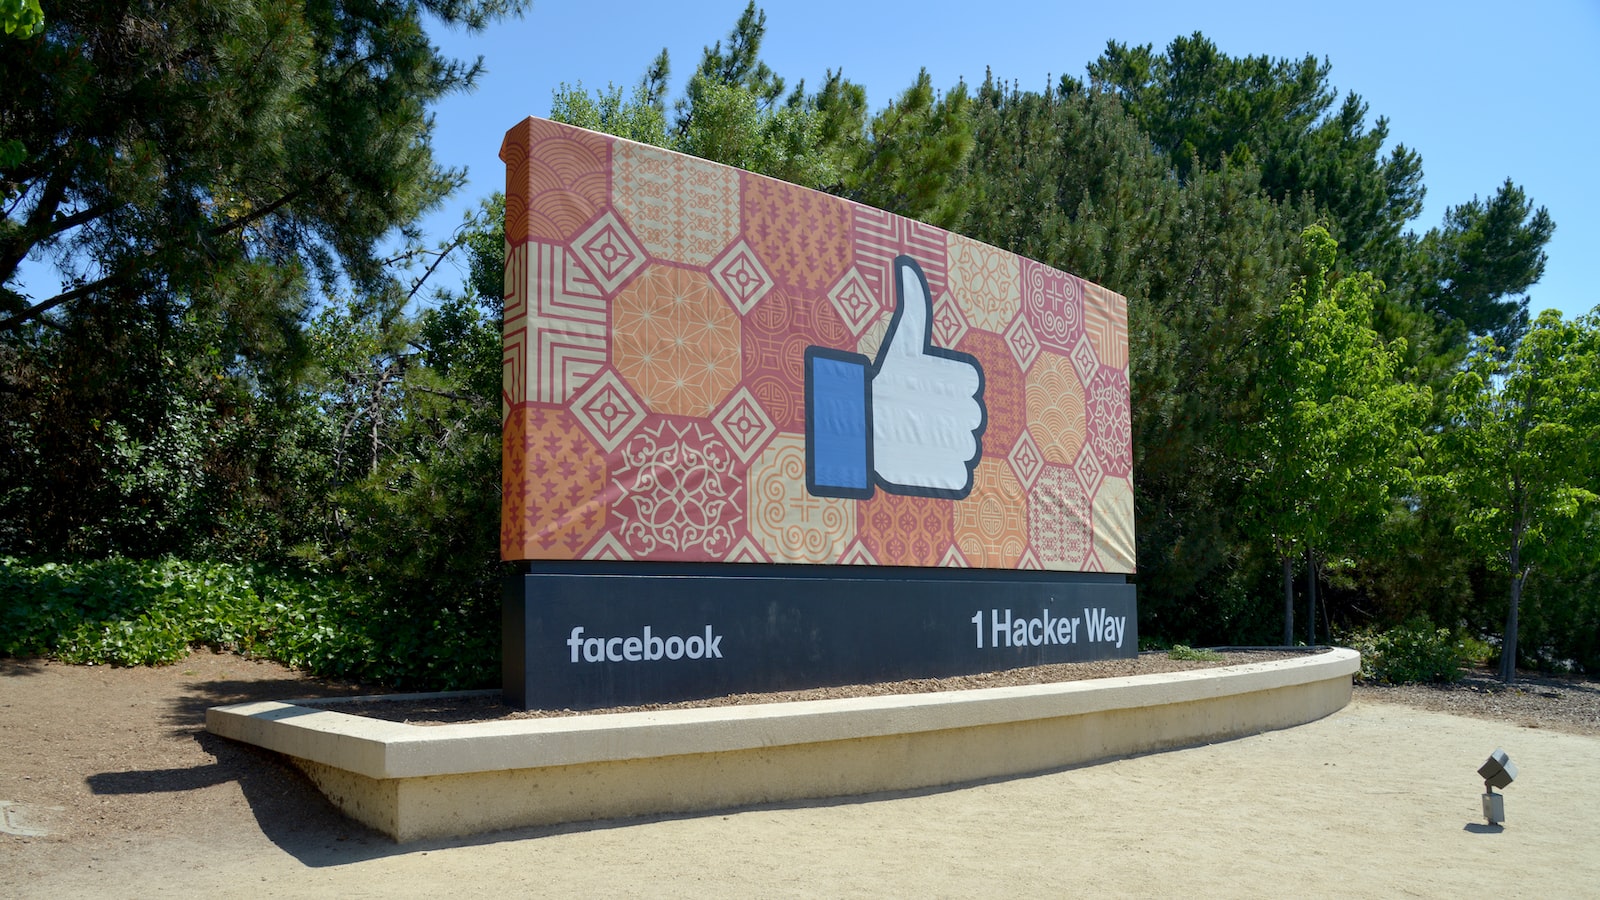 Raih Potensi Lebih Dalam: Mengoptimalkan Facebook sebagai Halaman